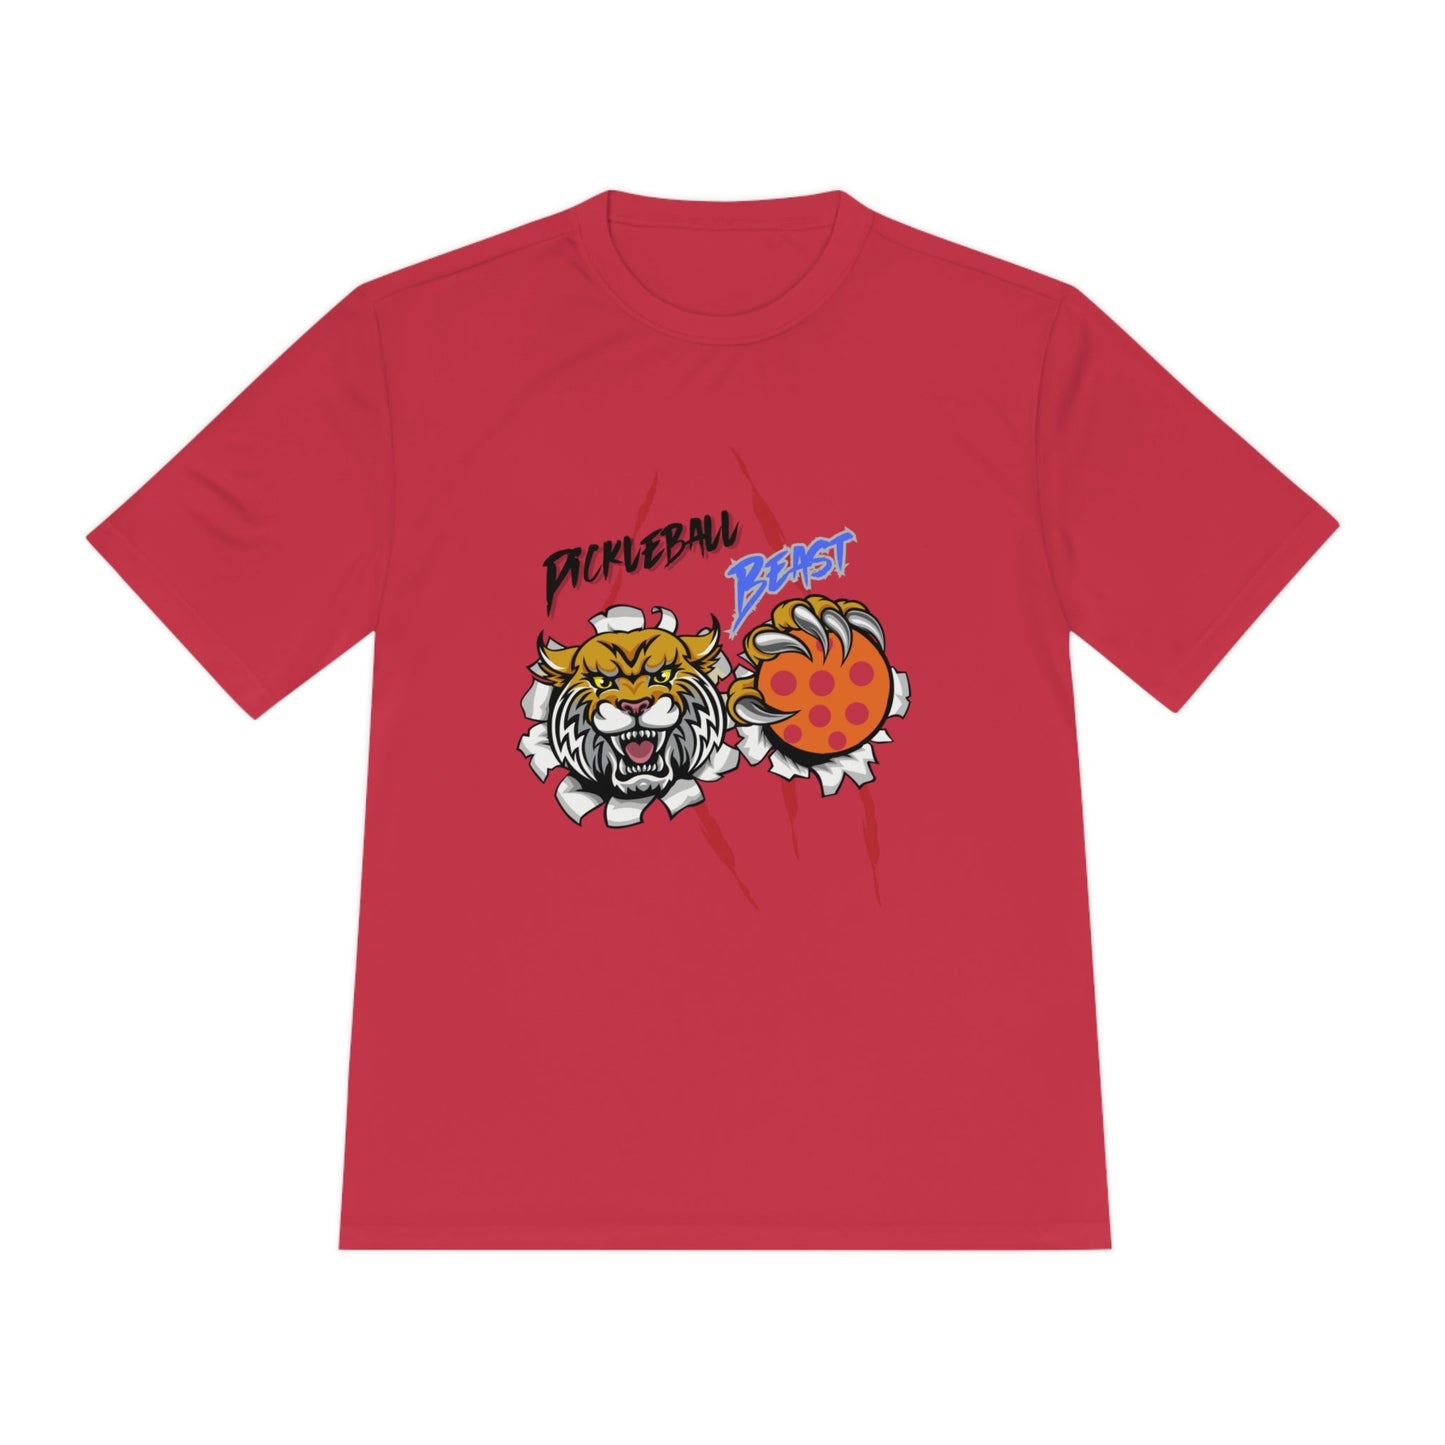 'Pickleball Beast' Dri Fit T-Shirt